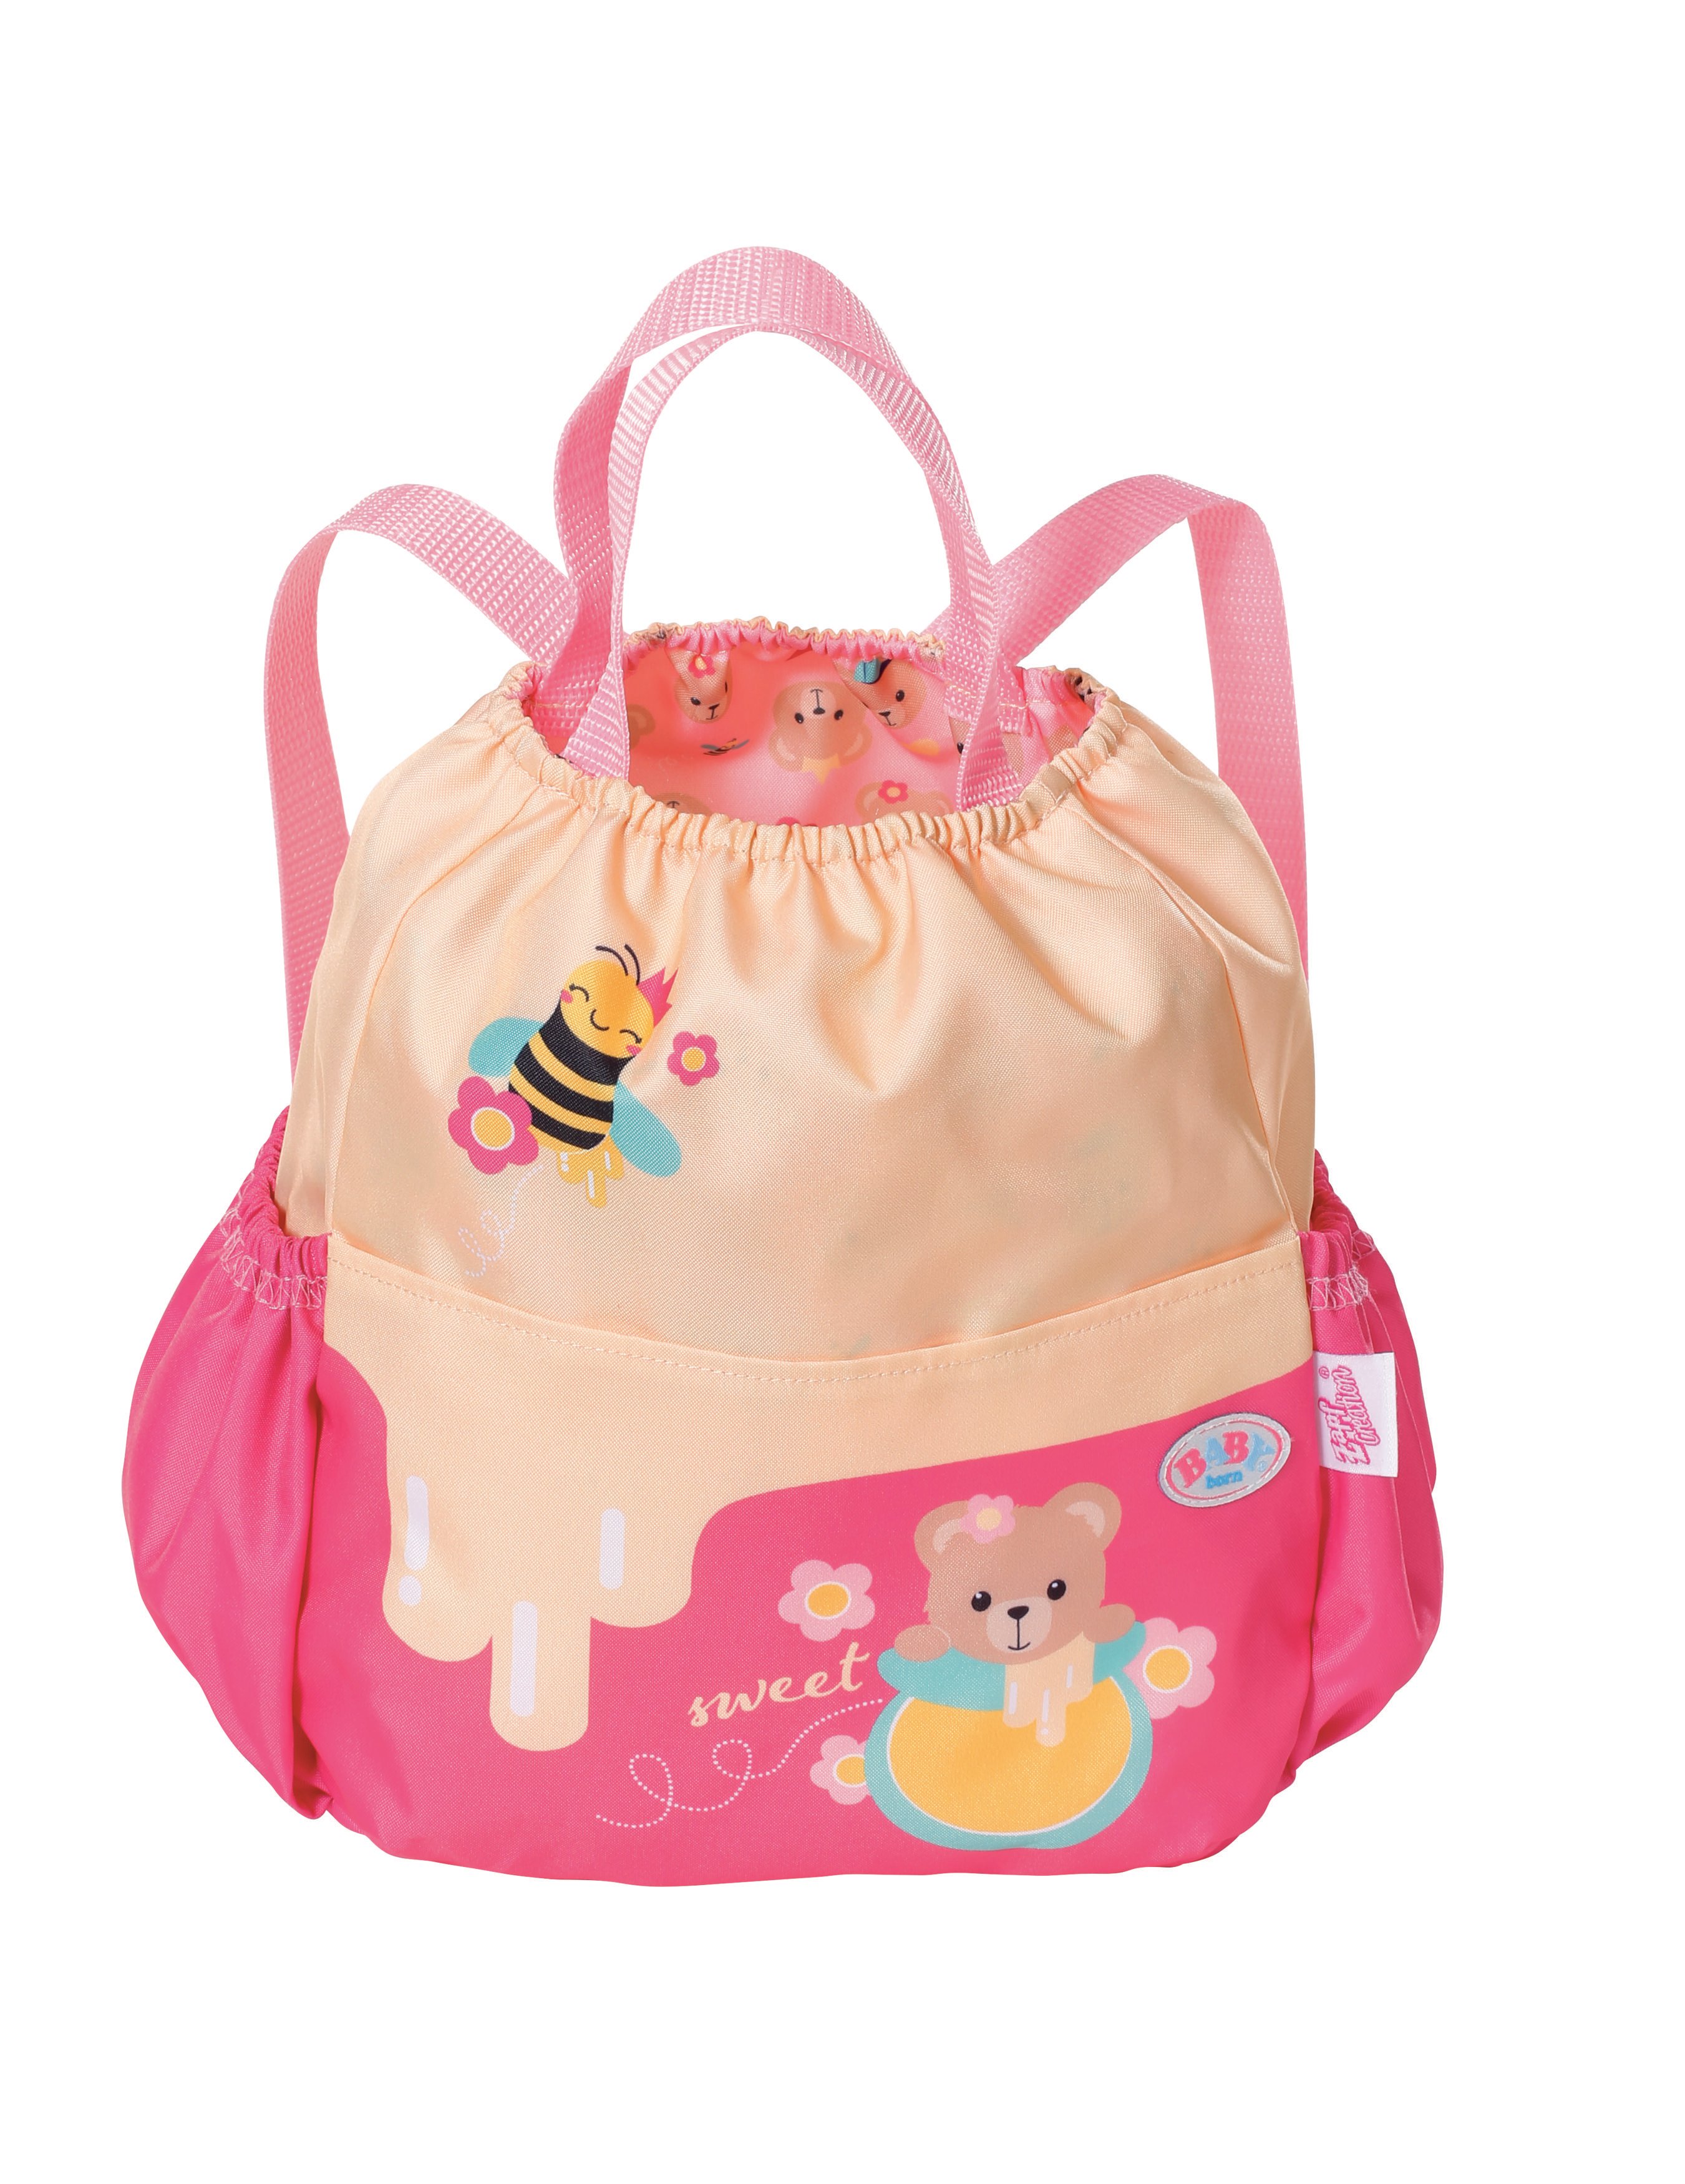 BABY born - Bear Backpack (834831) - Leker